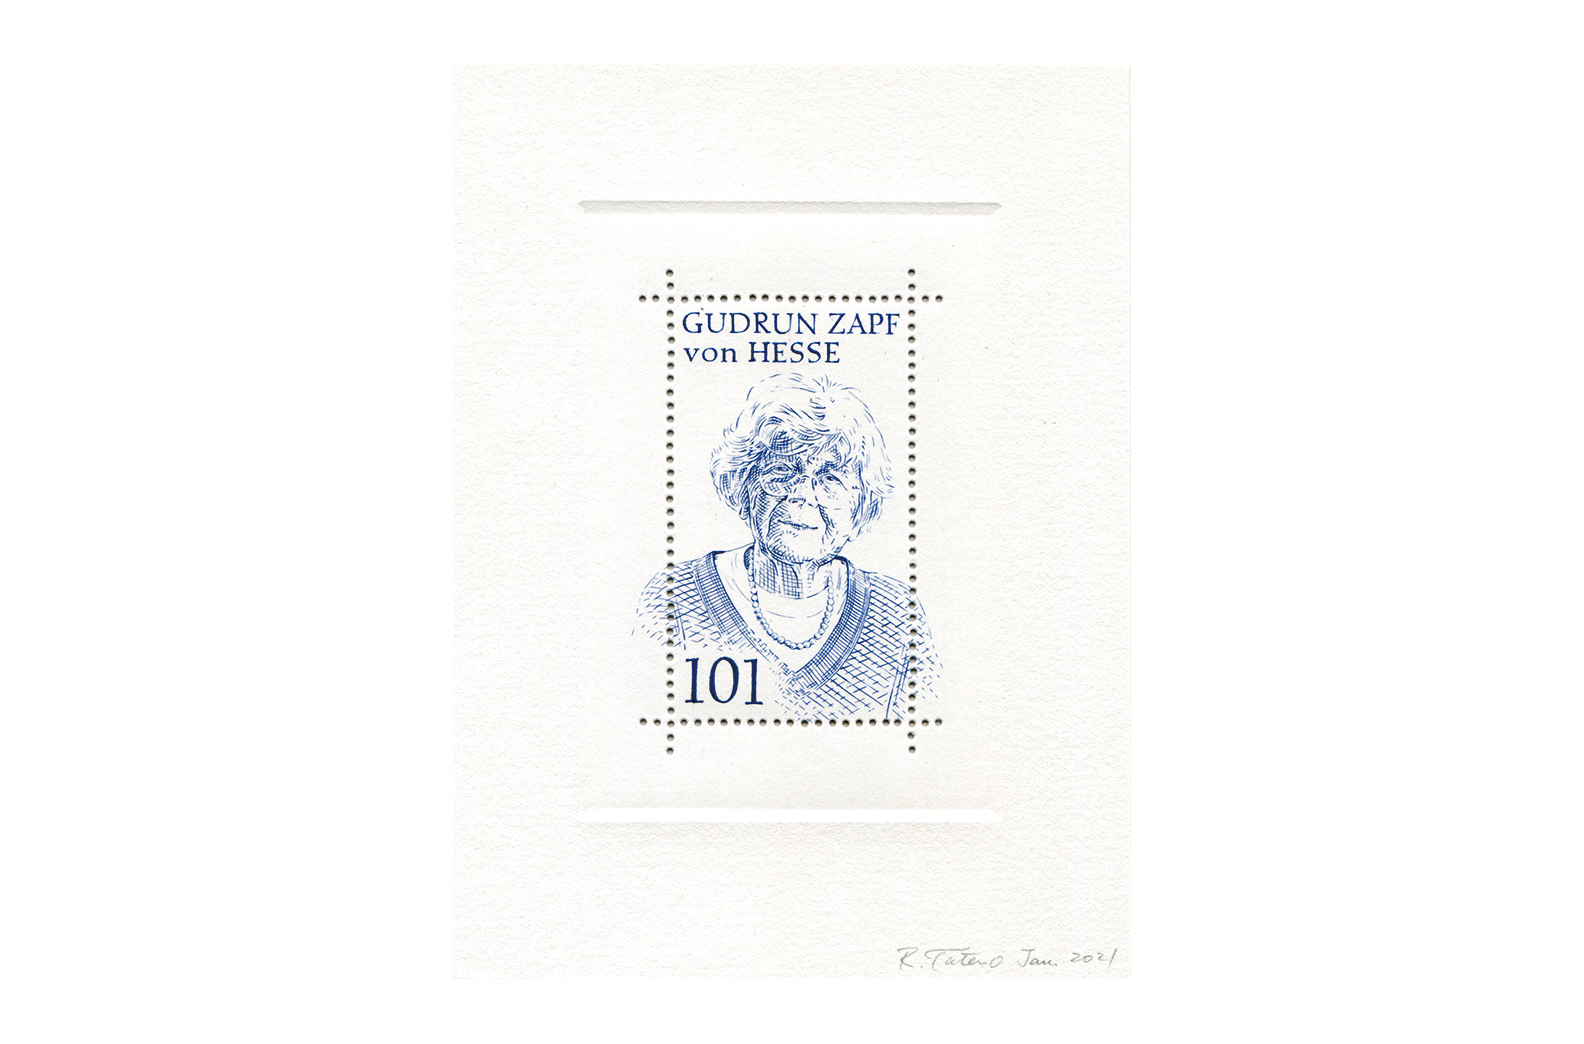 Stamp of Gudrun Zapf von Hesse